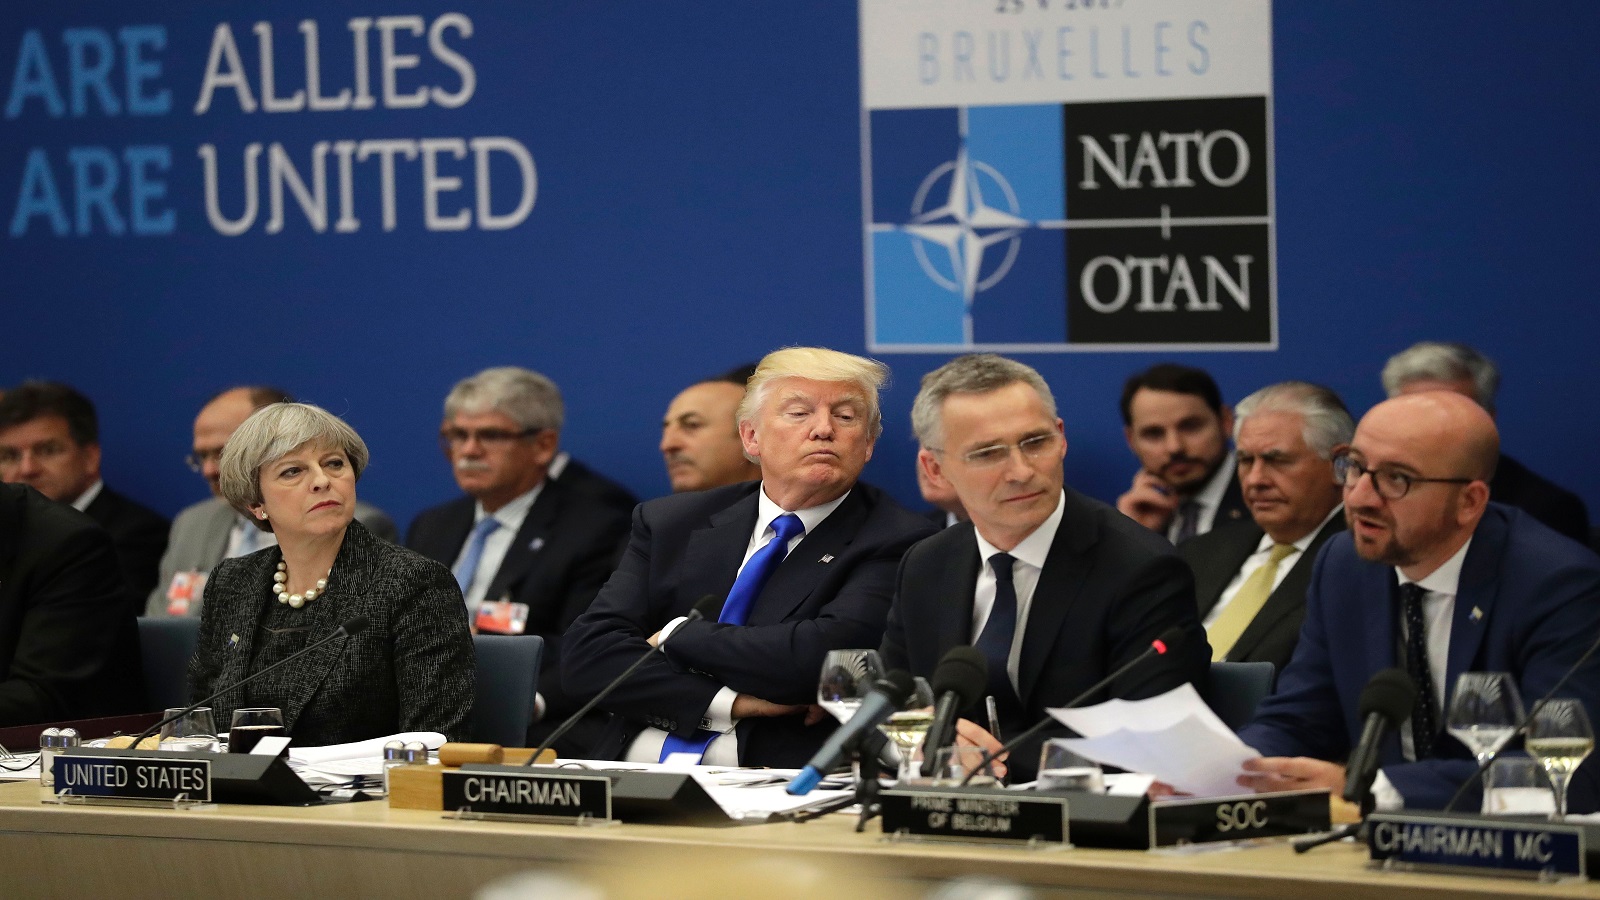 ترامب يوبّخ "الناتو"..ويهين الألمان